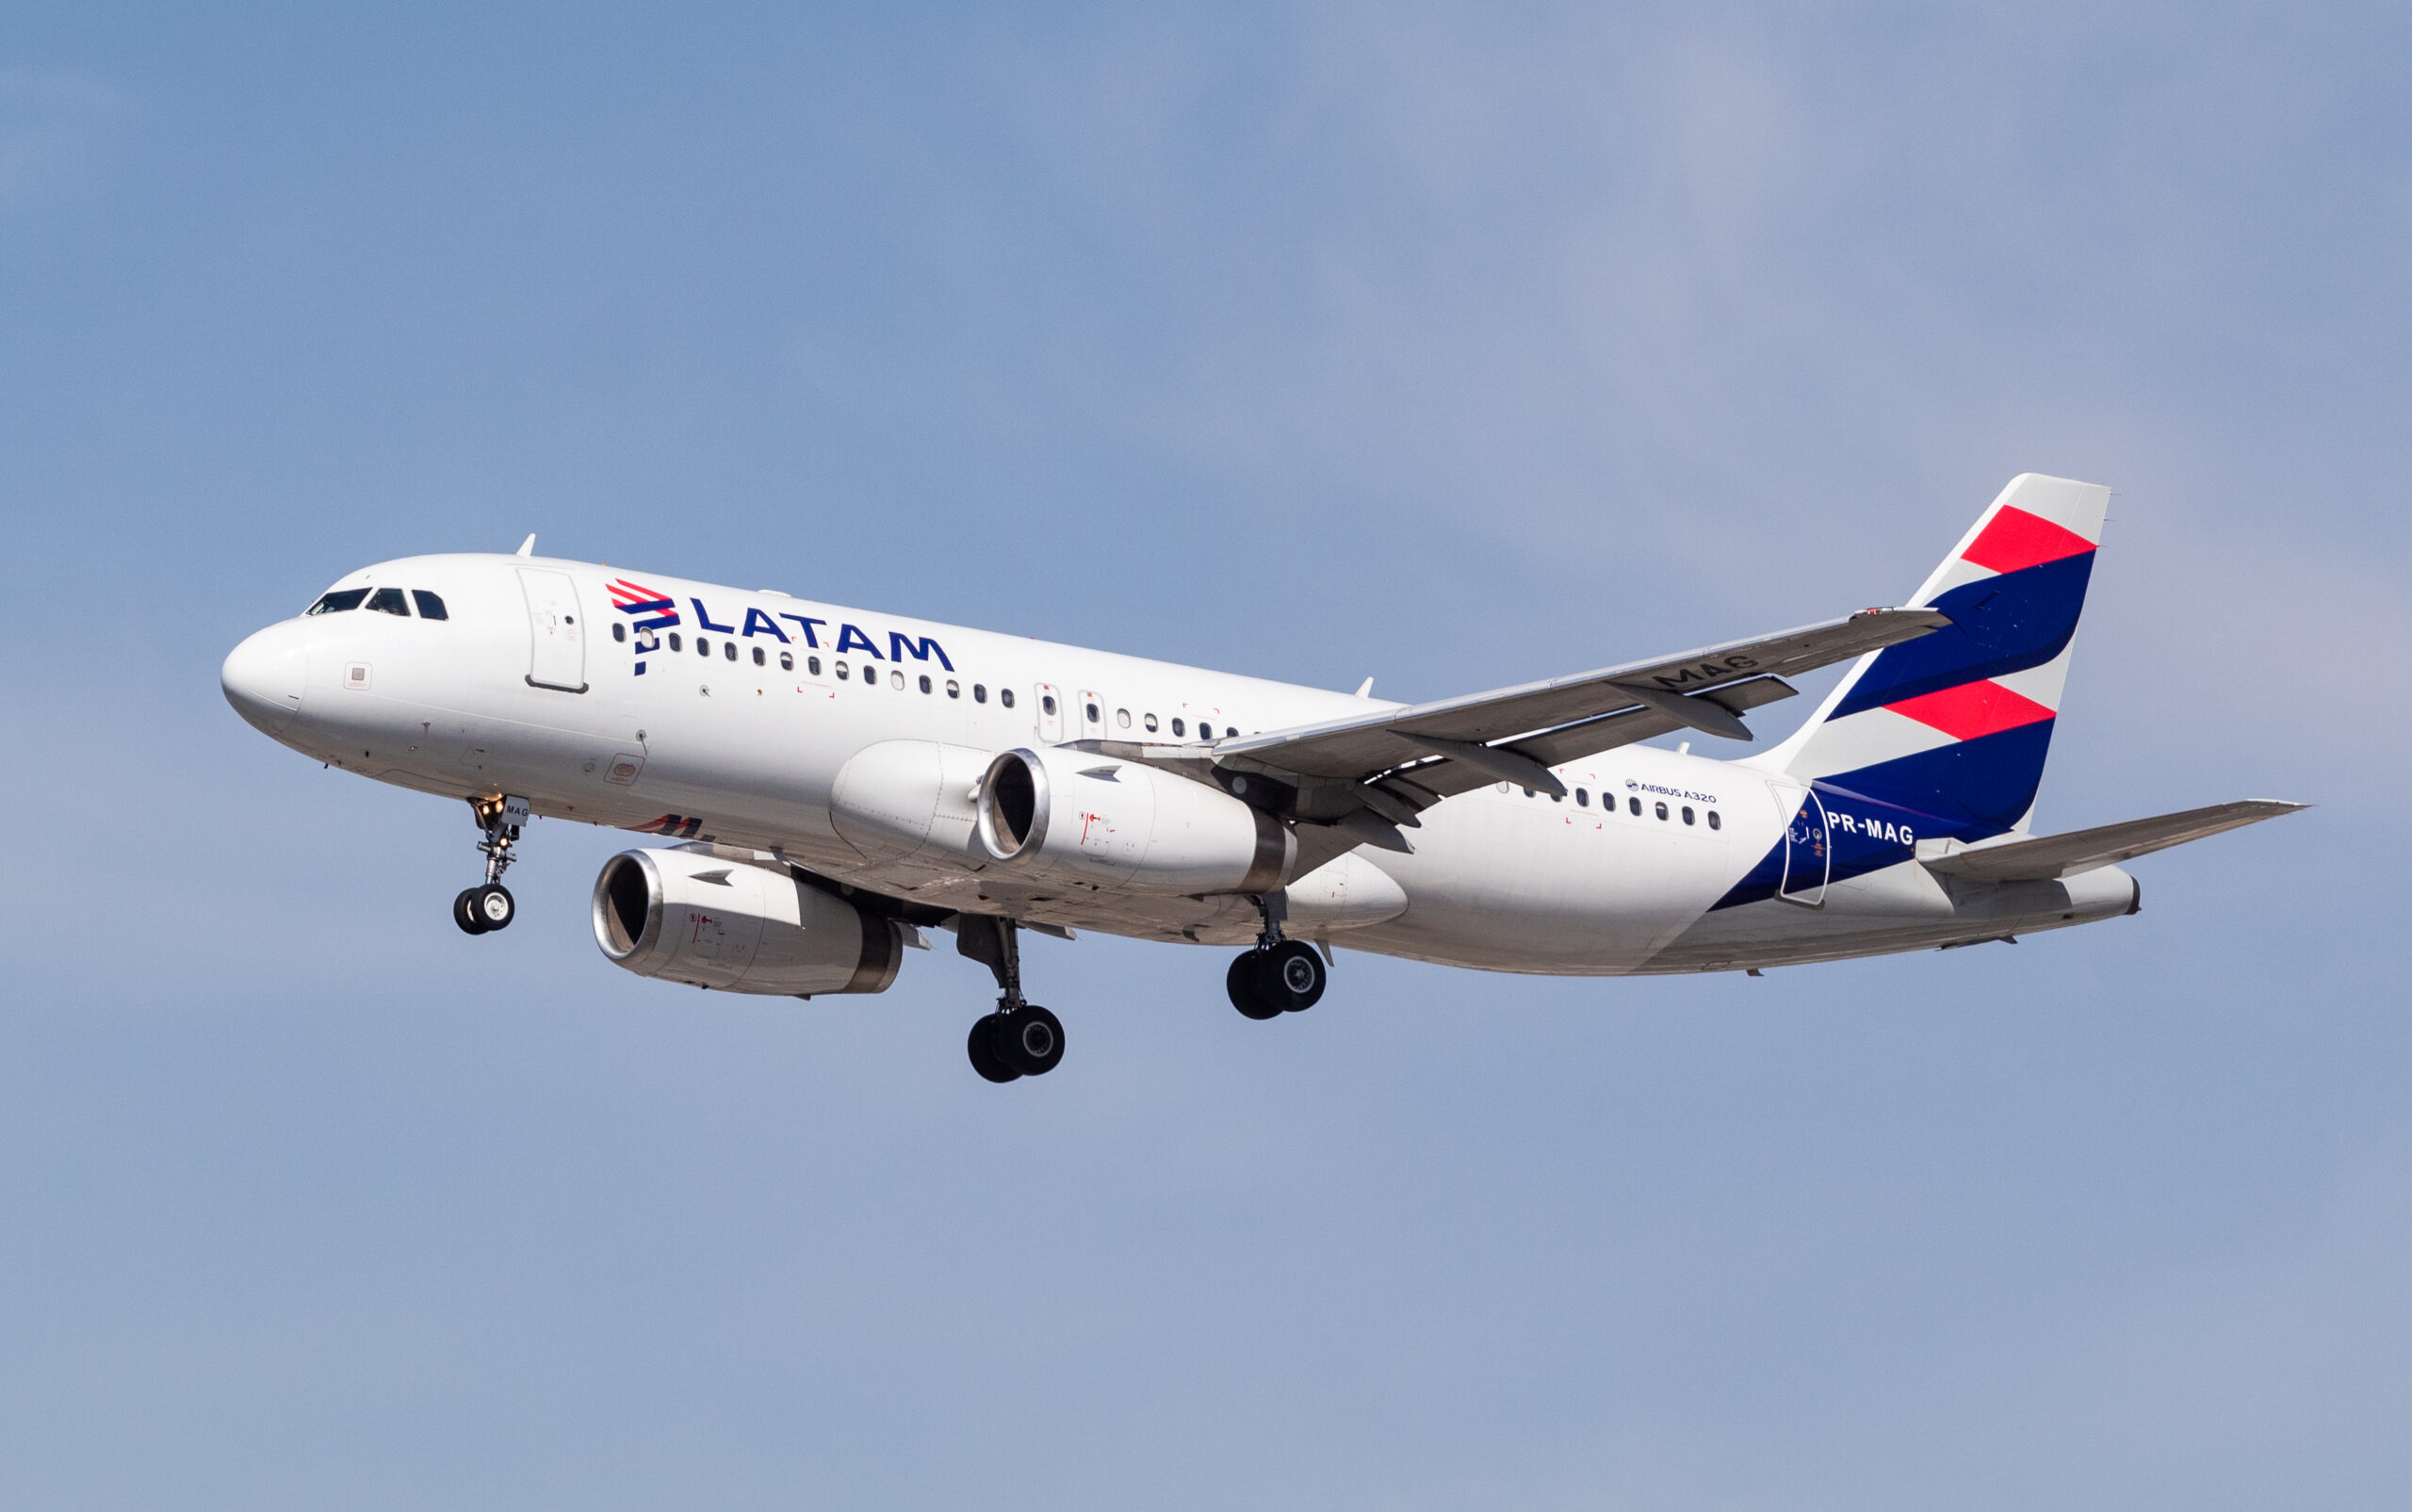 PR-MAG – Airbus A320-232 – LATAM Airlines